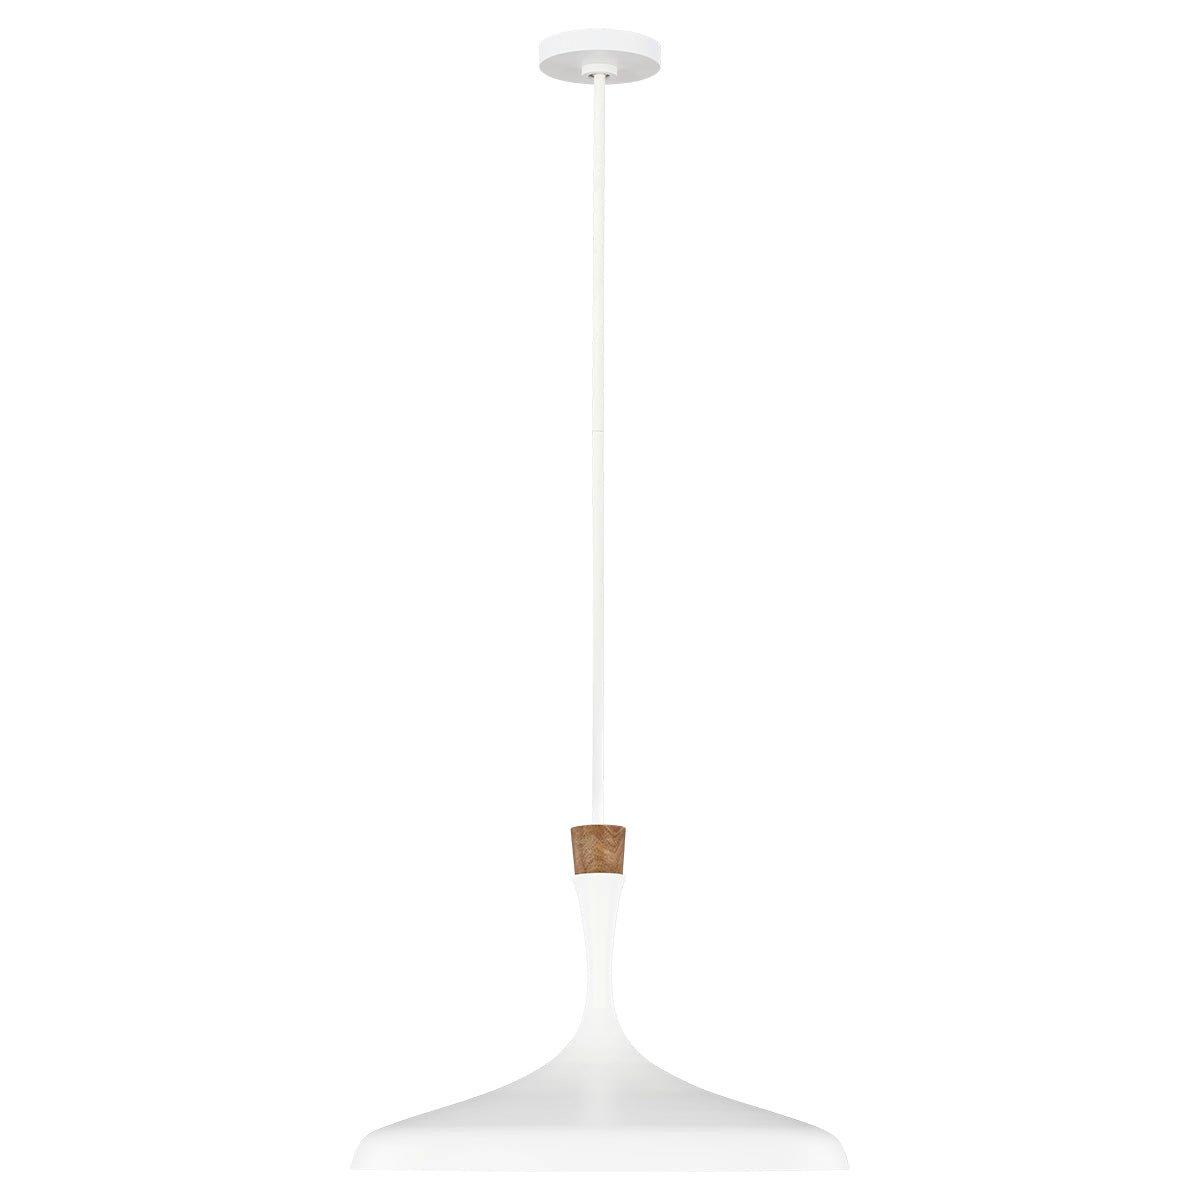 1 Bulb Ceiling Pendant Light Fitting Matte White LED E27 60W Bulb